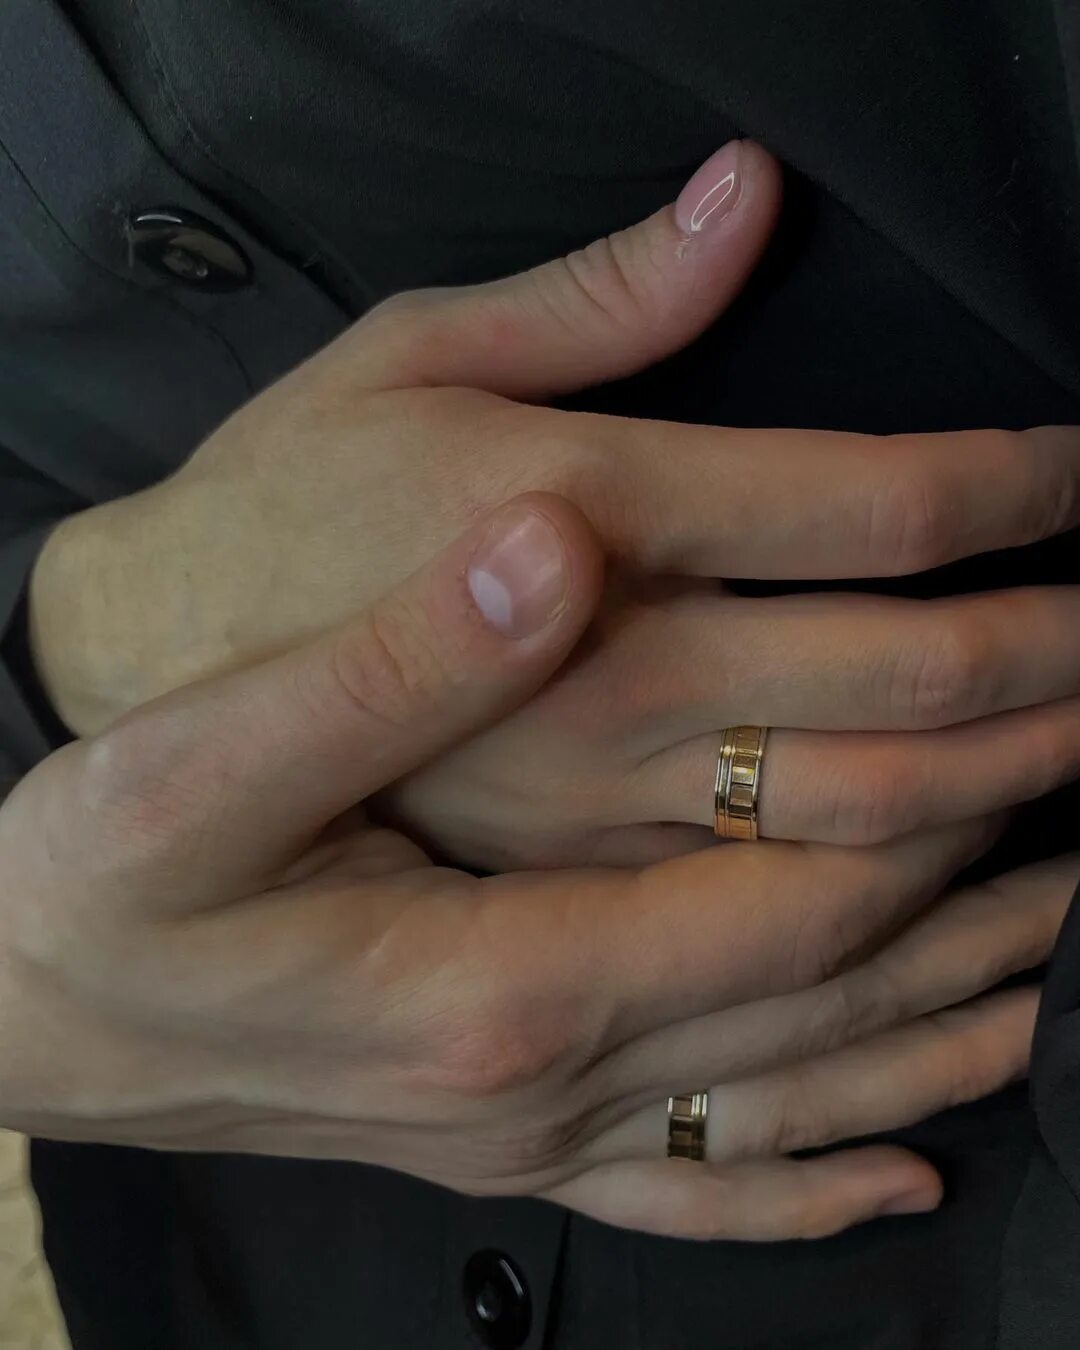 кольцо на большом пальце геи фото 115